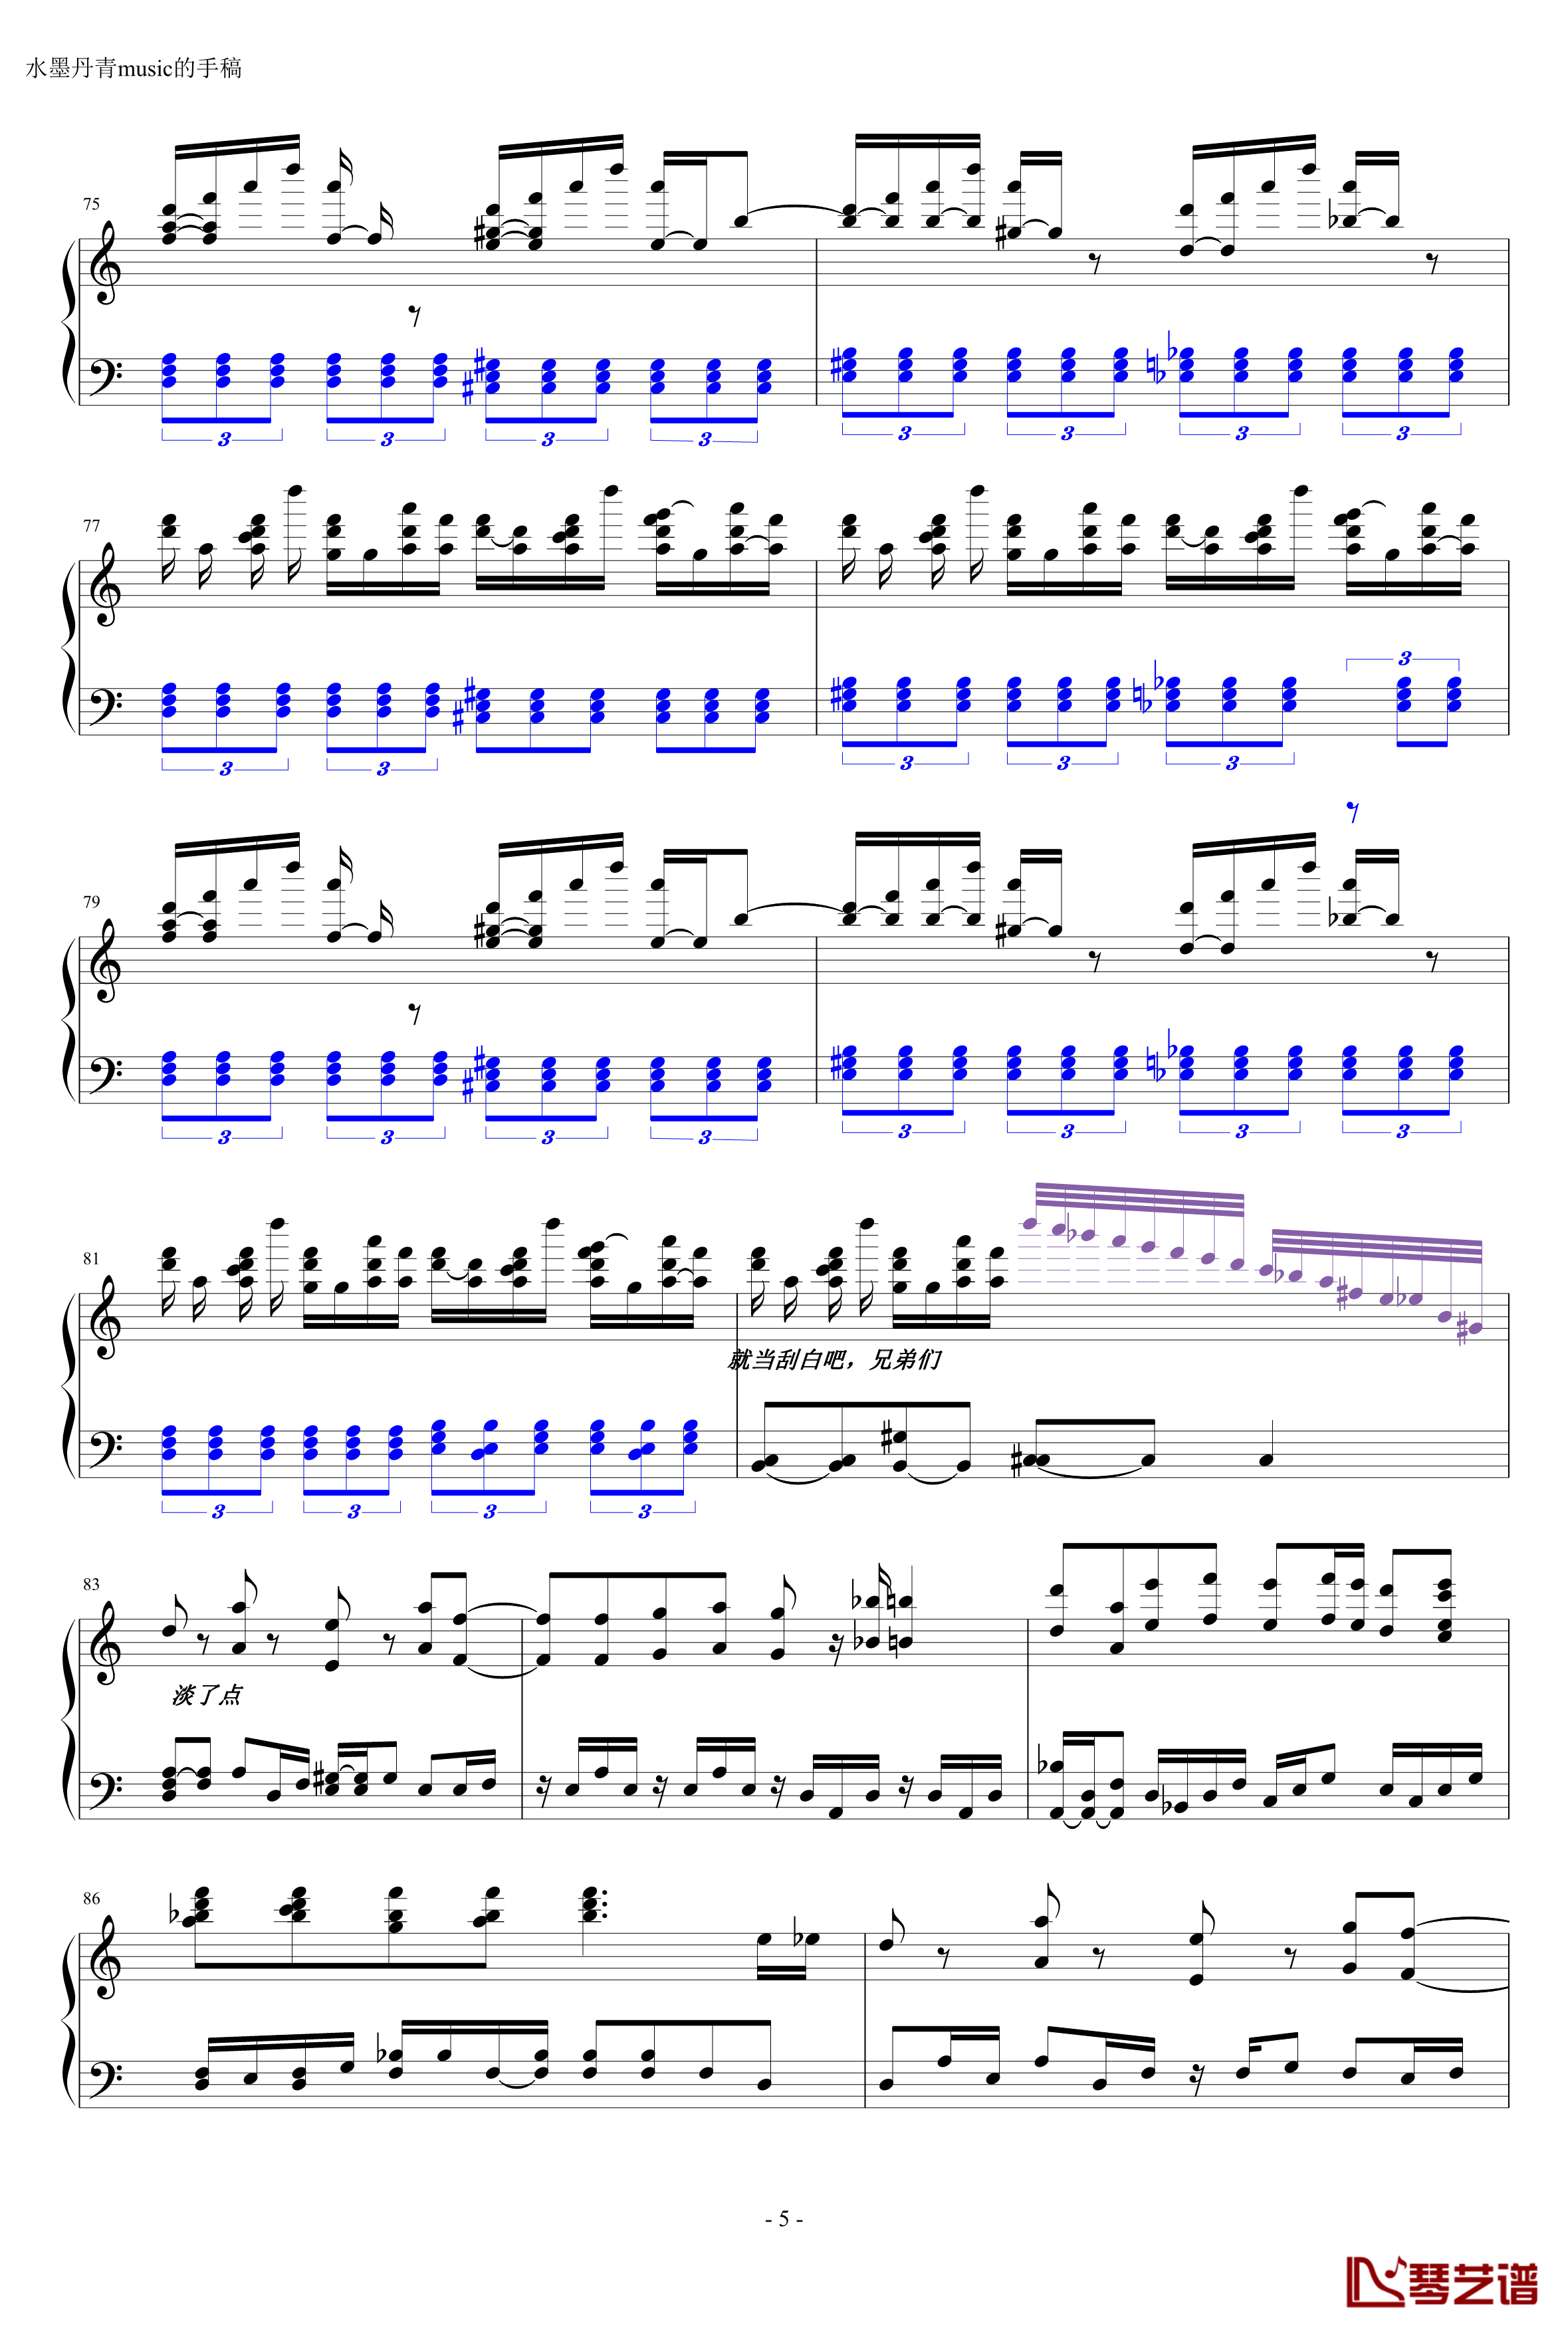 死亡华尔兹钢琴谱-简化版-水墨丹青music5